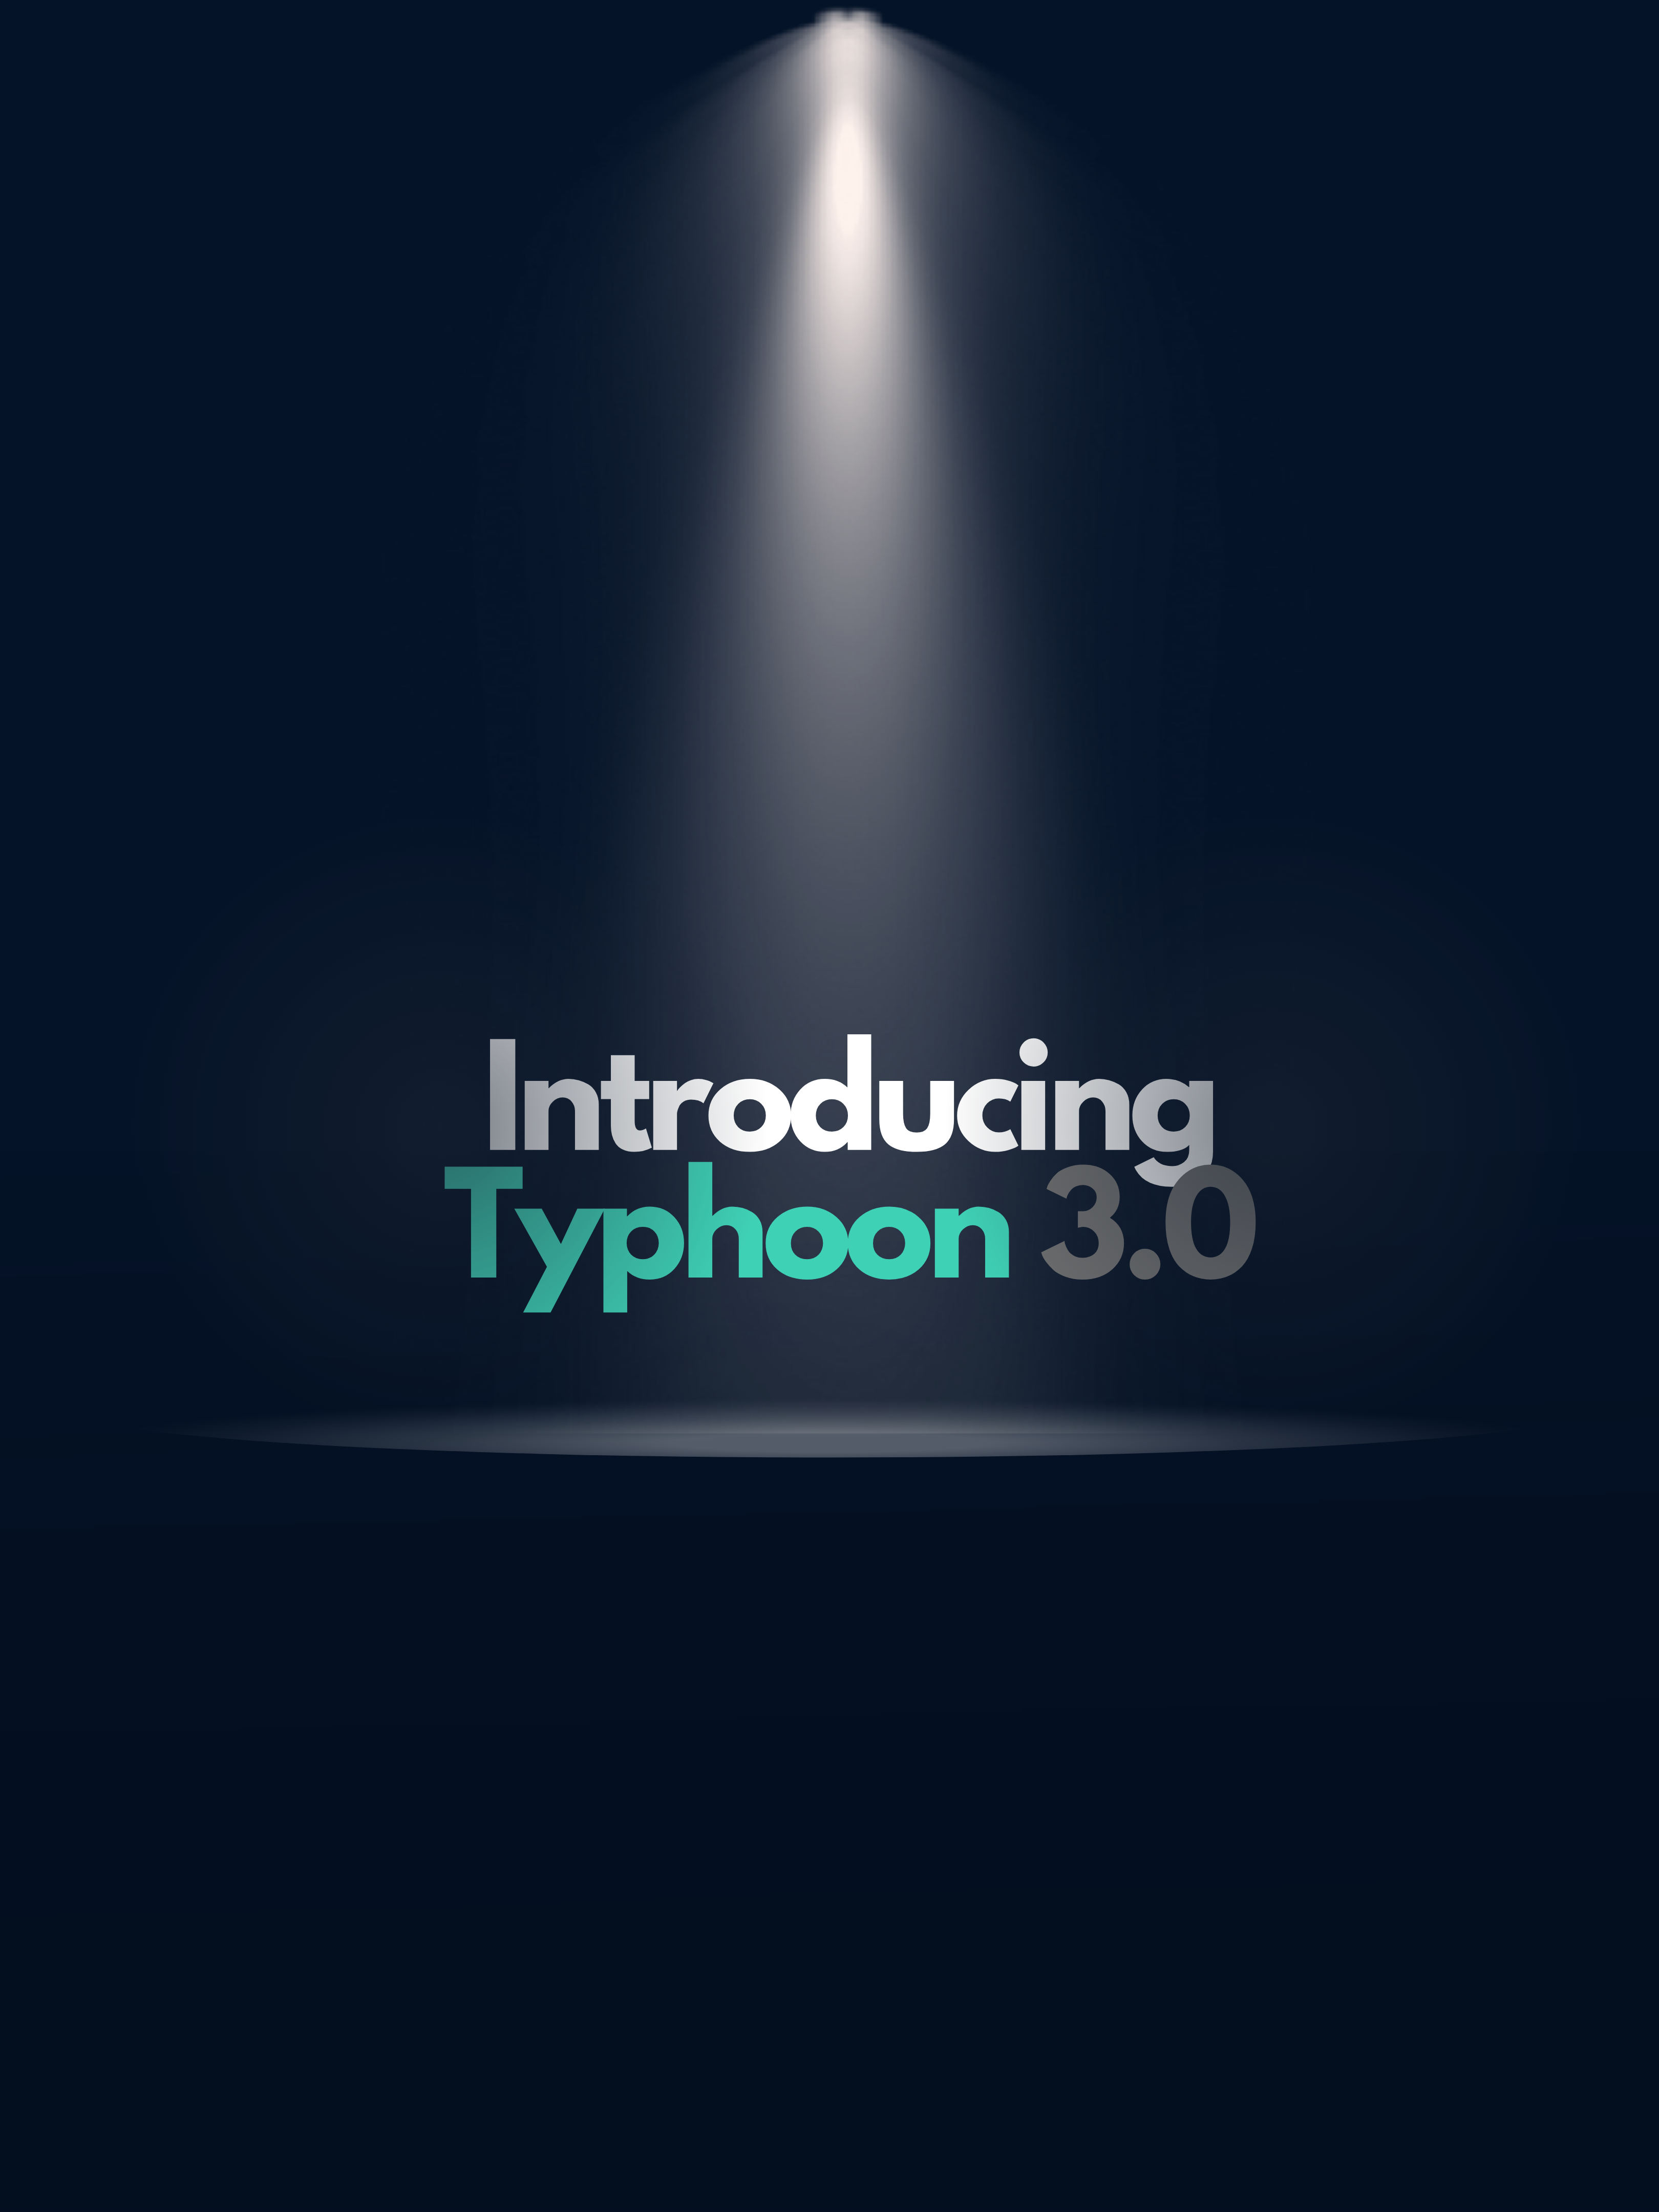 Introducing Typhoon 3.0